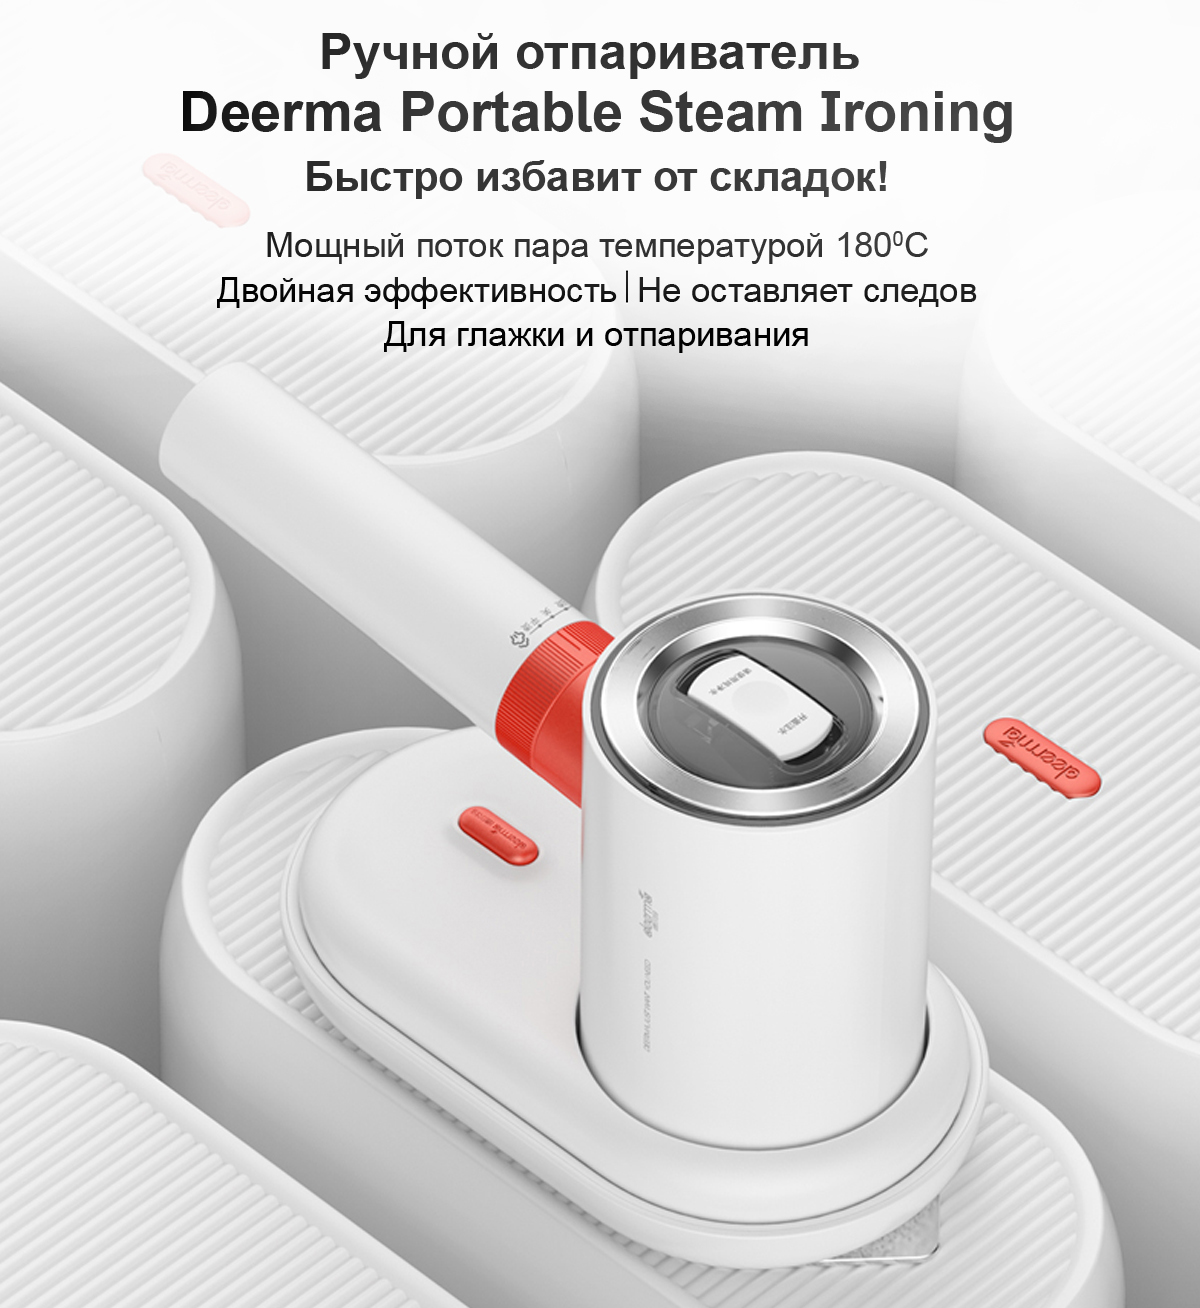 Ручной отпариватель Deerma Portable Steam Ironing (DEM-HS200)